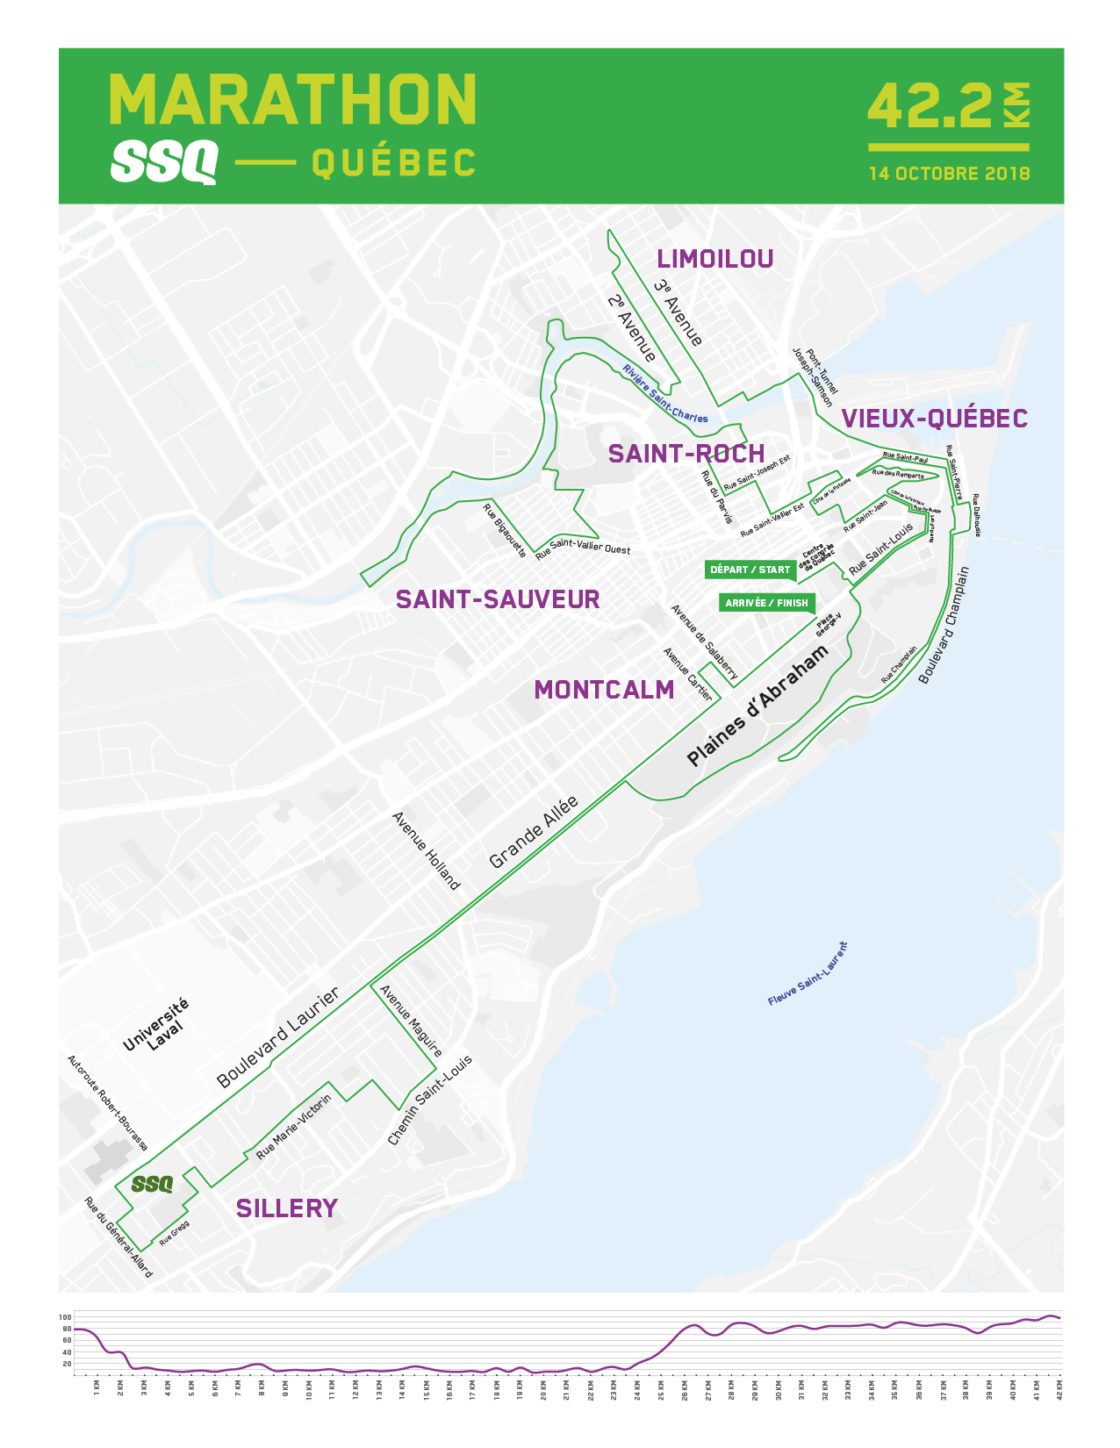 Quebec City Marathon announces major changes to race course Canadian